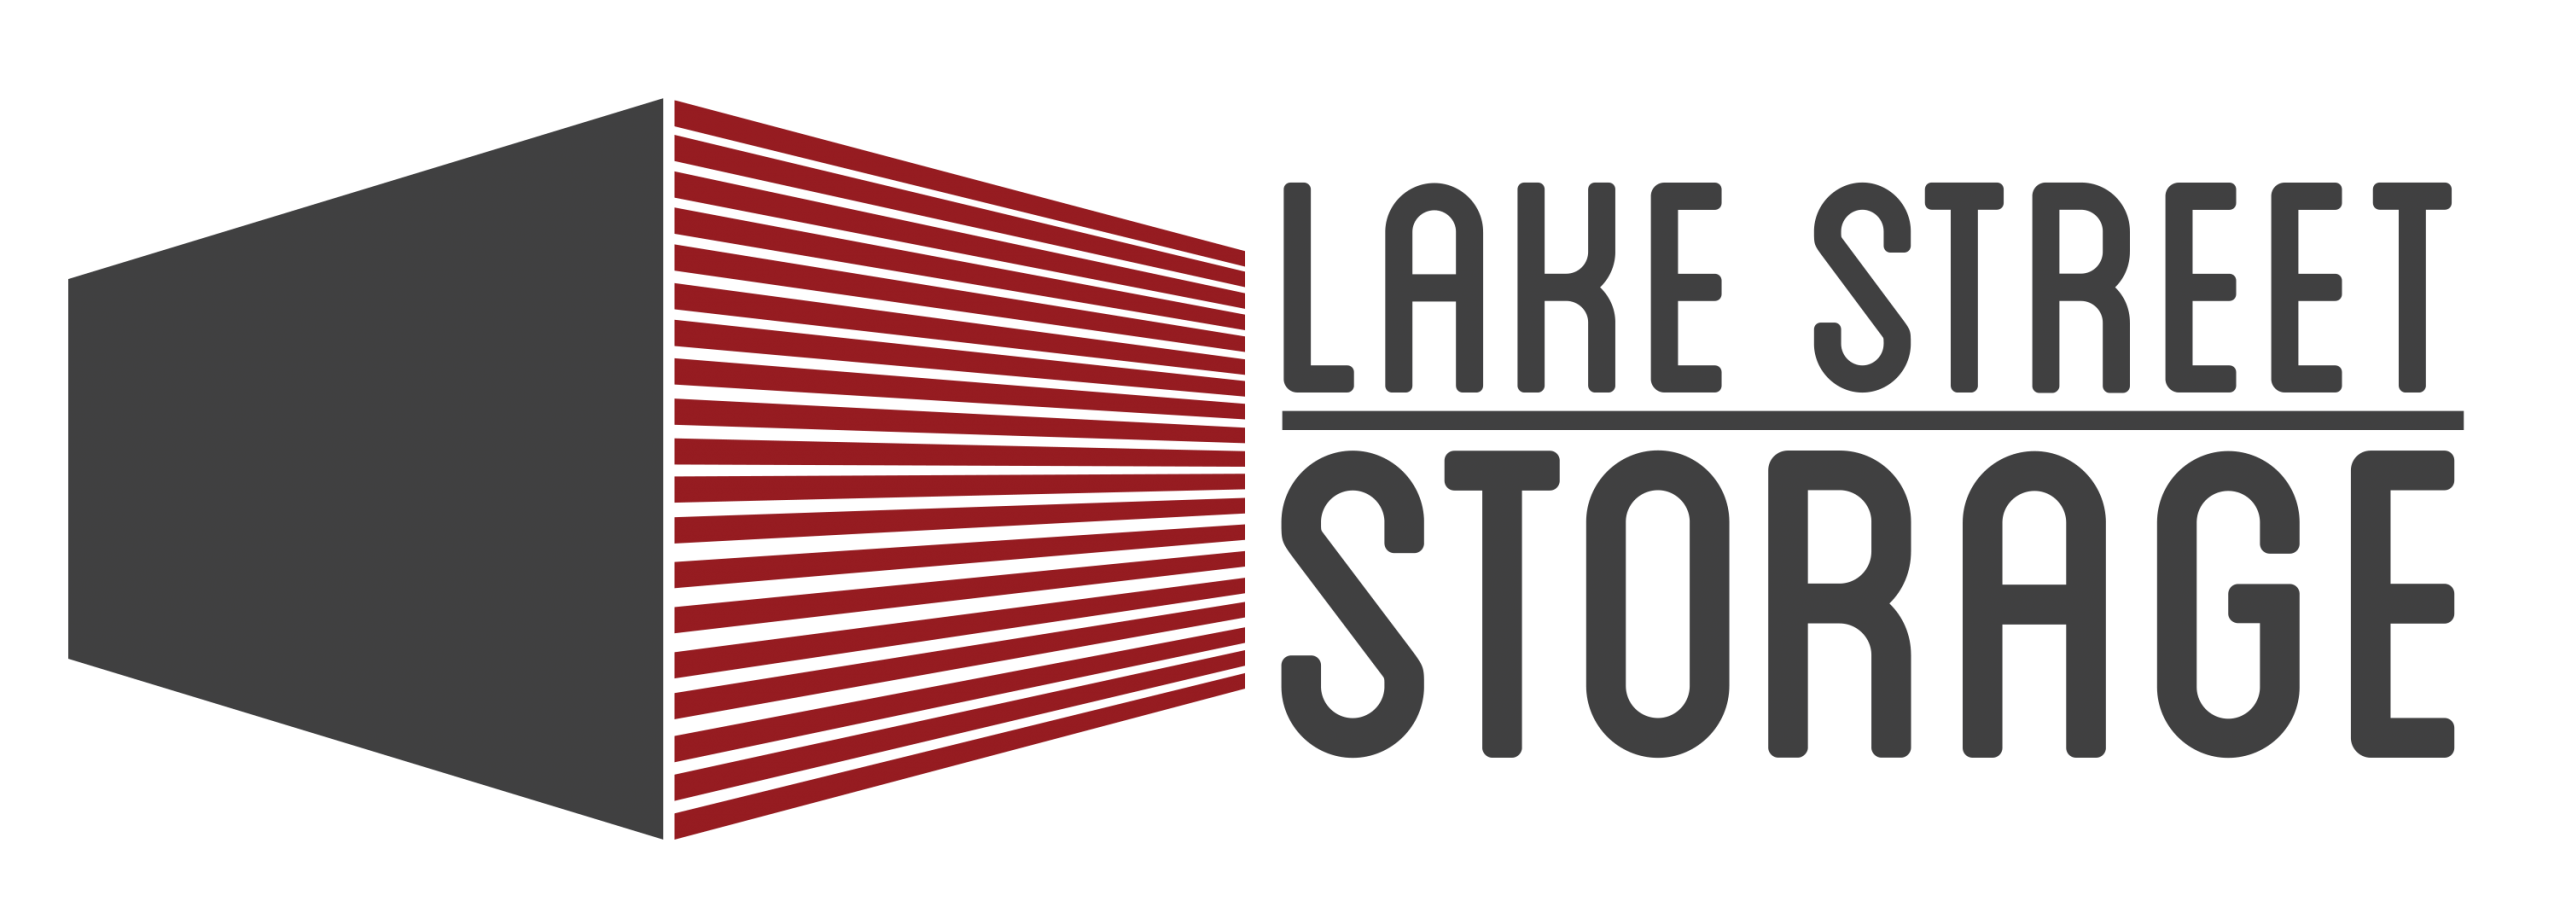 Lake Street Storage